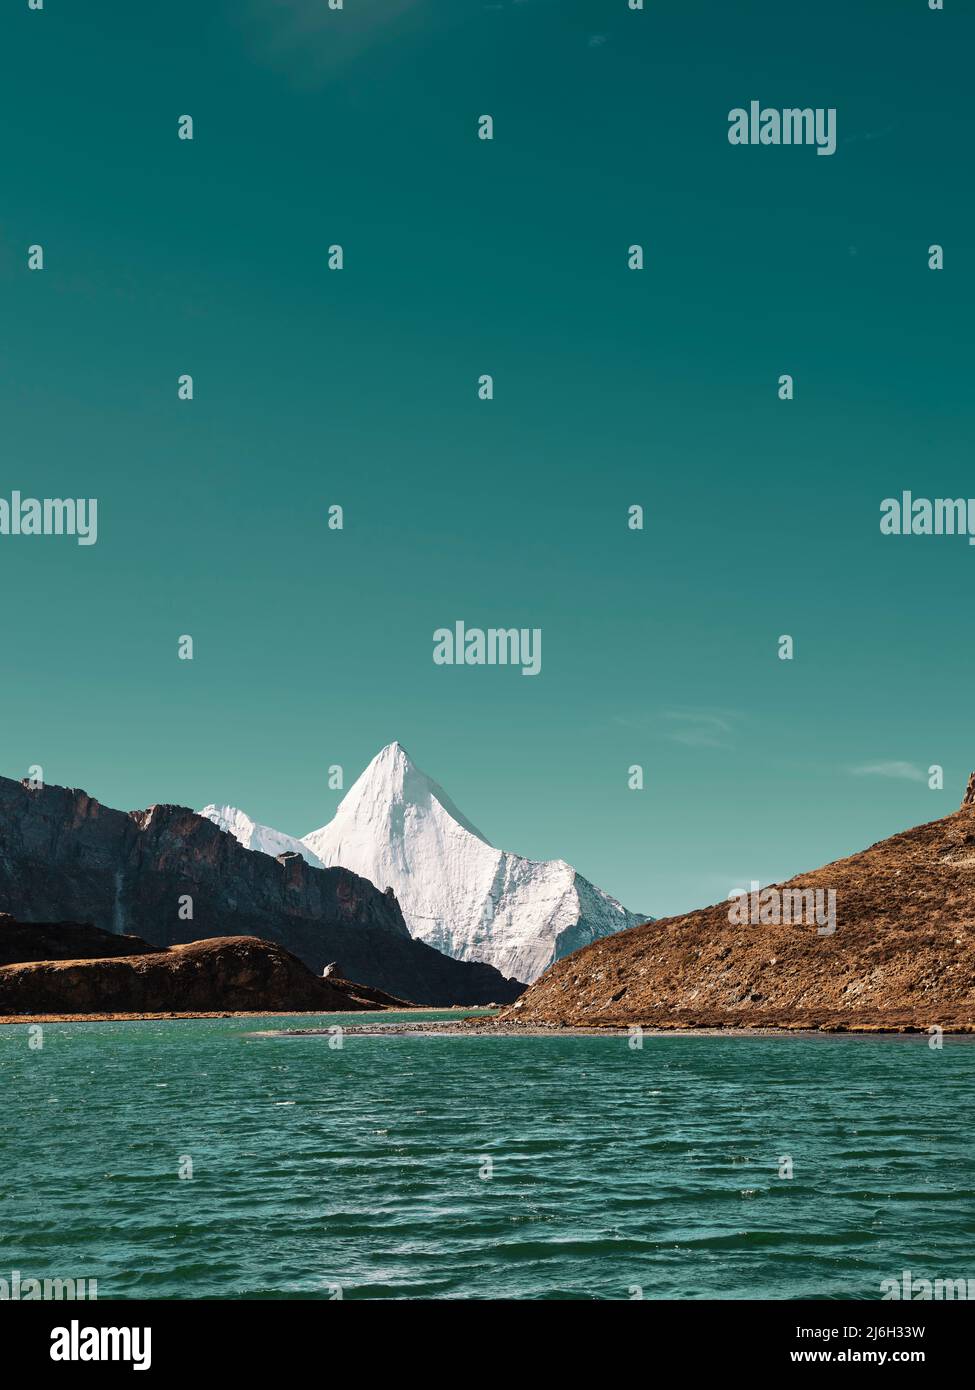 le mont yangmaiyong (ou jampayang en langue tibétaine) et le lac boyongcuo sous le ciel bleu en yading, comté de daocheng, province du sichuan, chine Banque D'Images